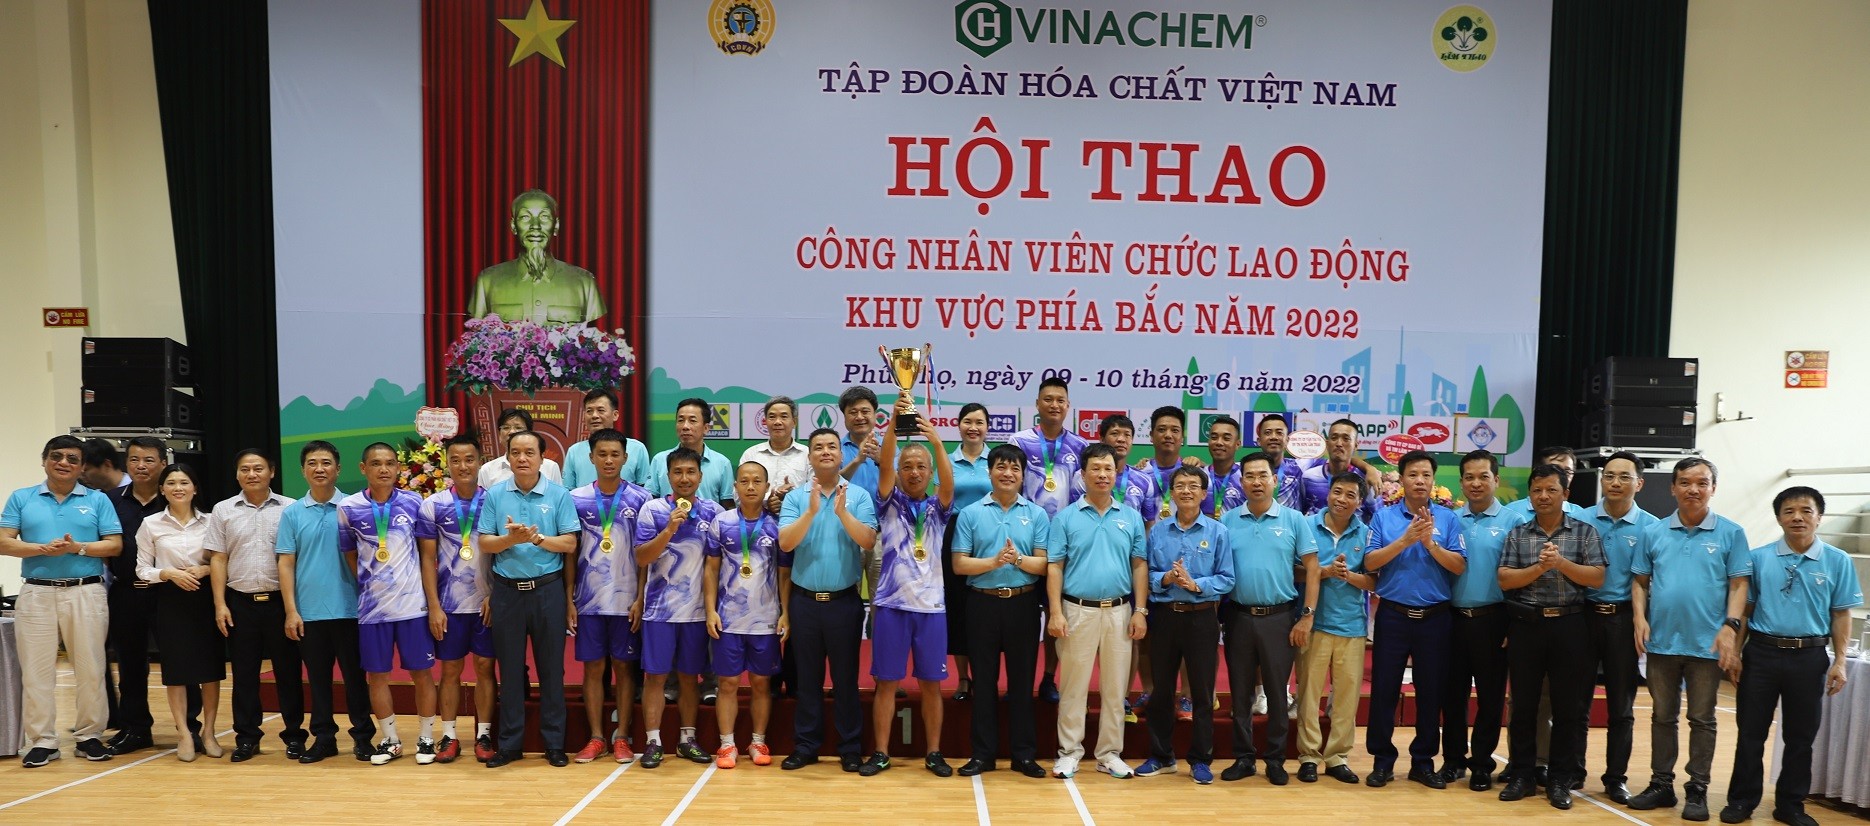 Bế mạc Hội thao công nhân viên chức lao động Tập đoàn Hóa chất Việt Nam khu vực phía Bắc, năm 2022